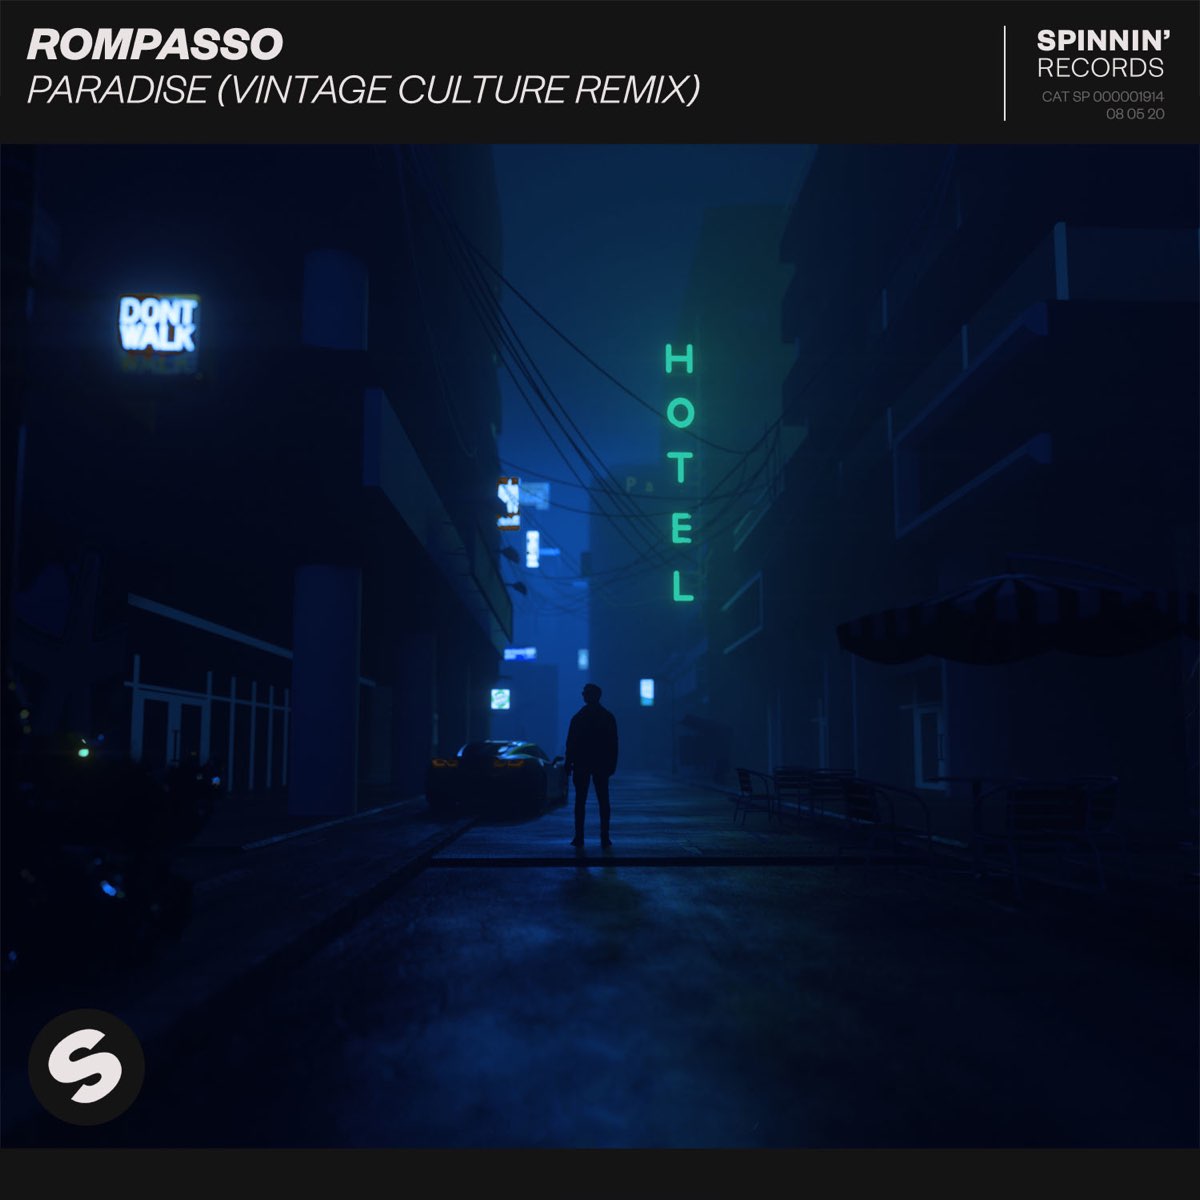 Rompasso Paradise (Vintage Culture Remix) cover artwork